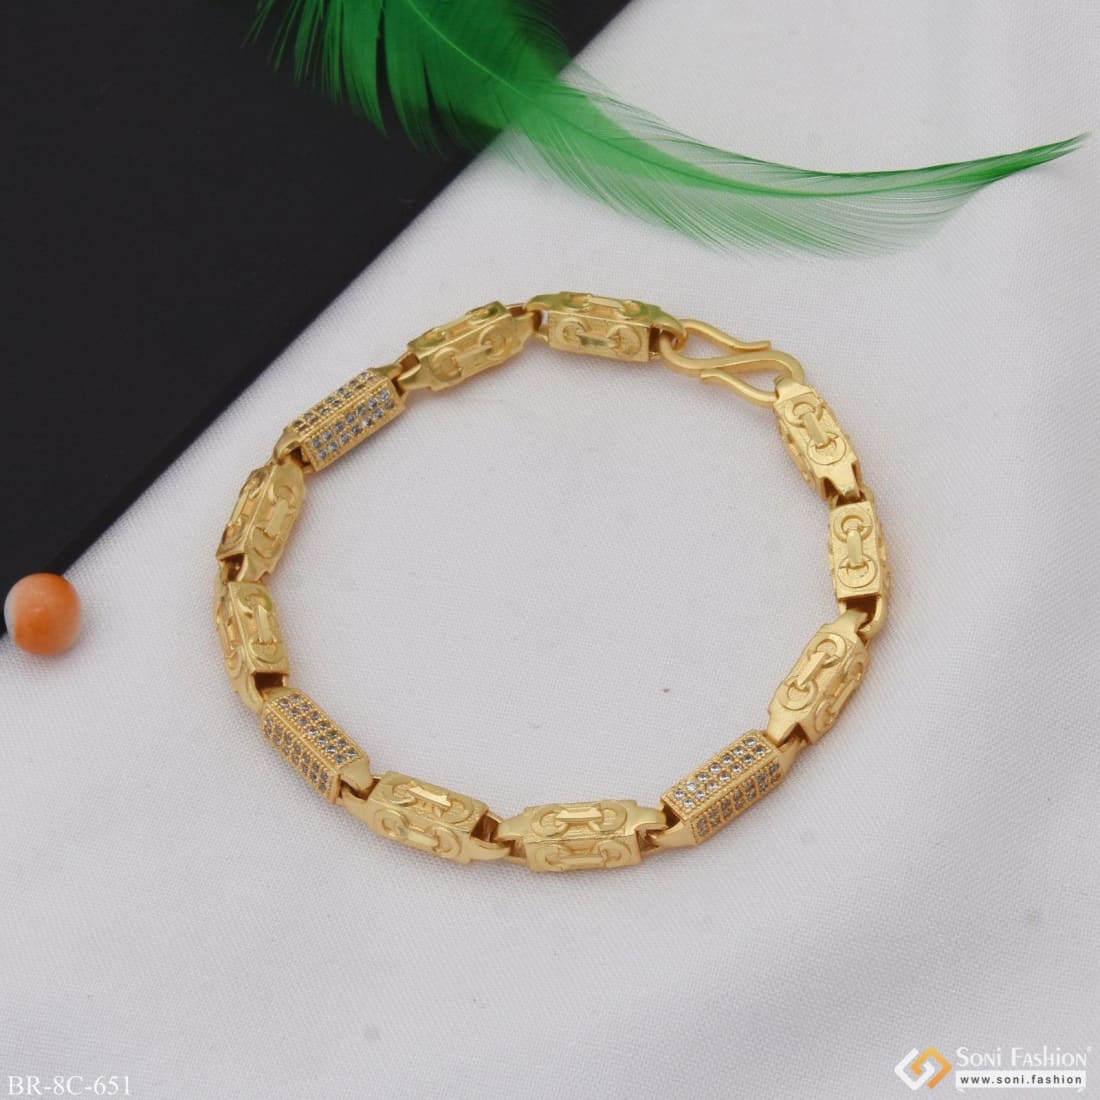 Buy 916 Gold Men Bracelets Mb12 Online | P S Jewellery - JewelFlix